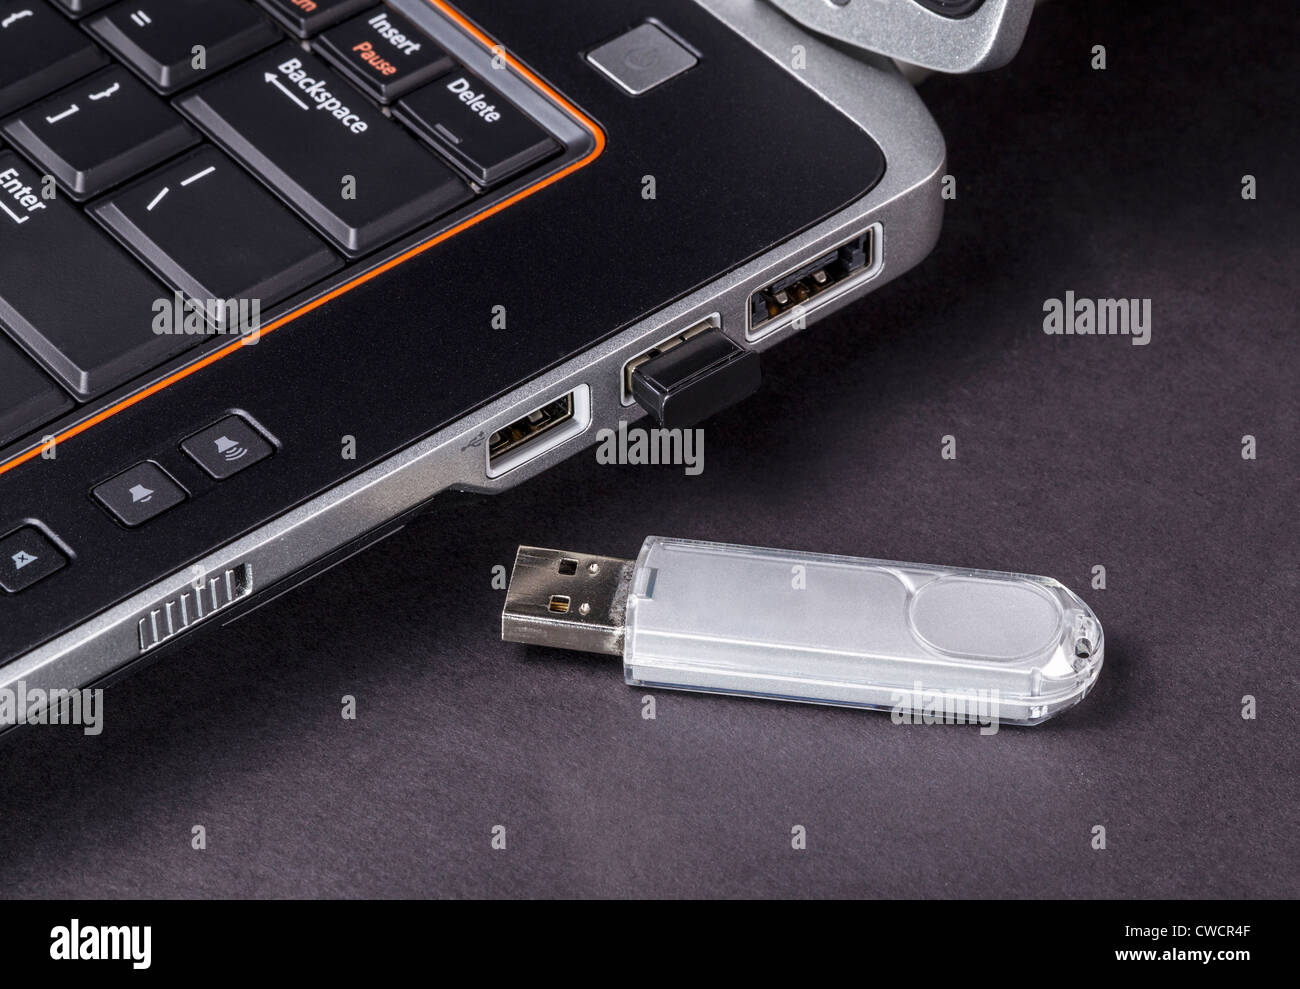 Périphérique USB portable non sécurisé à côté de l'ordinateur portable Banque D'Images